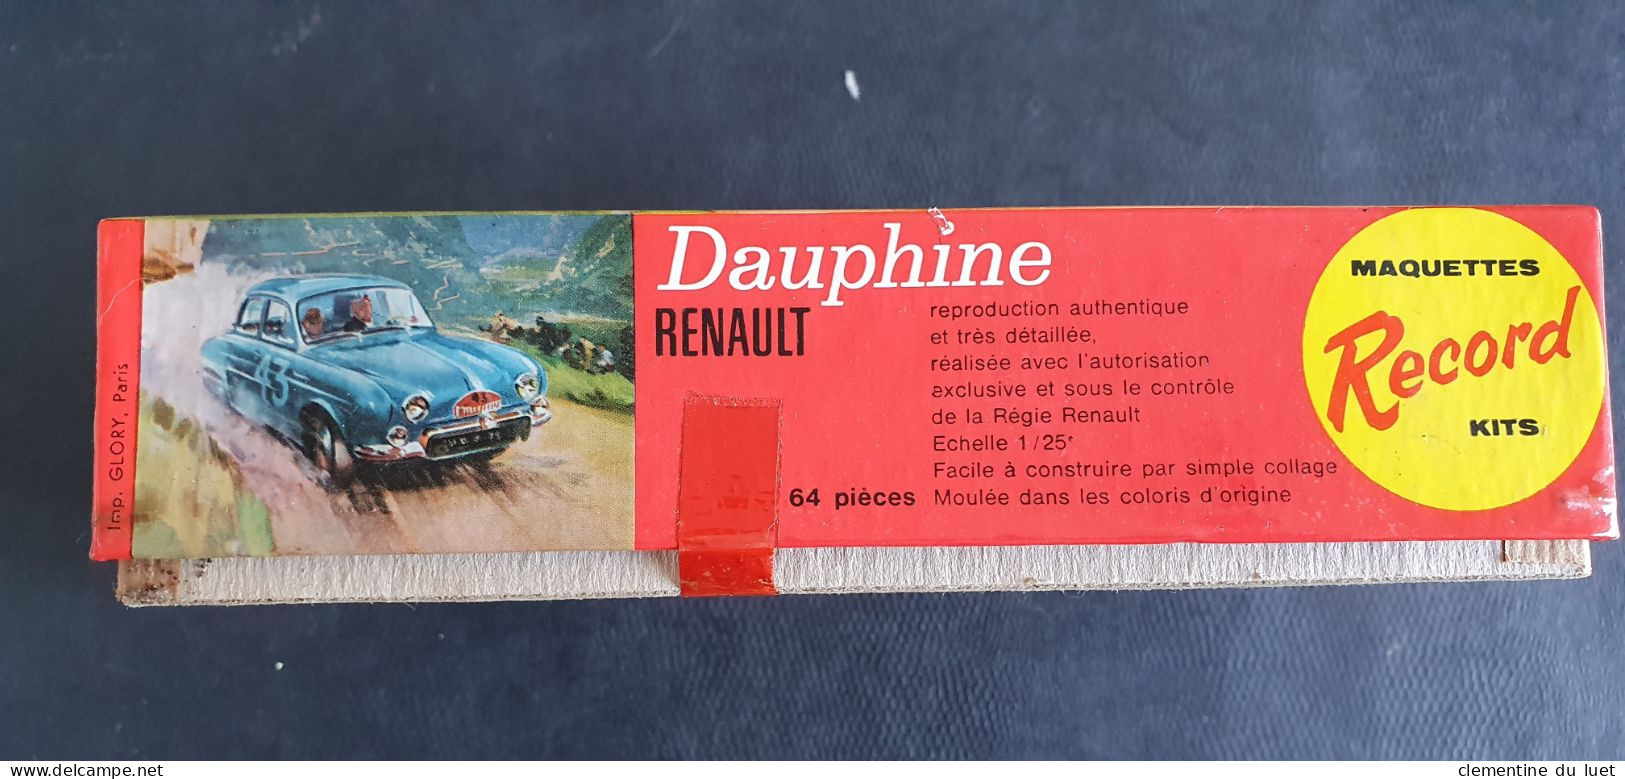 MAQUETTE RENAULT DAUPHINE RECORD KITS 64 PIECES ECHELLE 1 / 25 EME - Autos